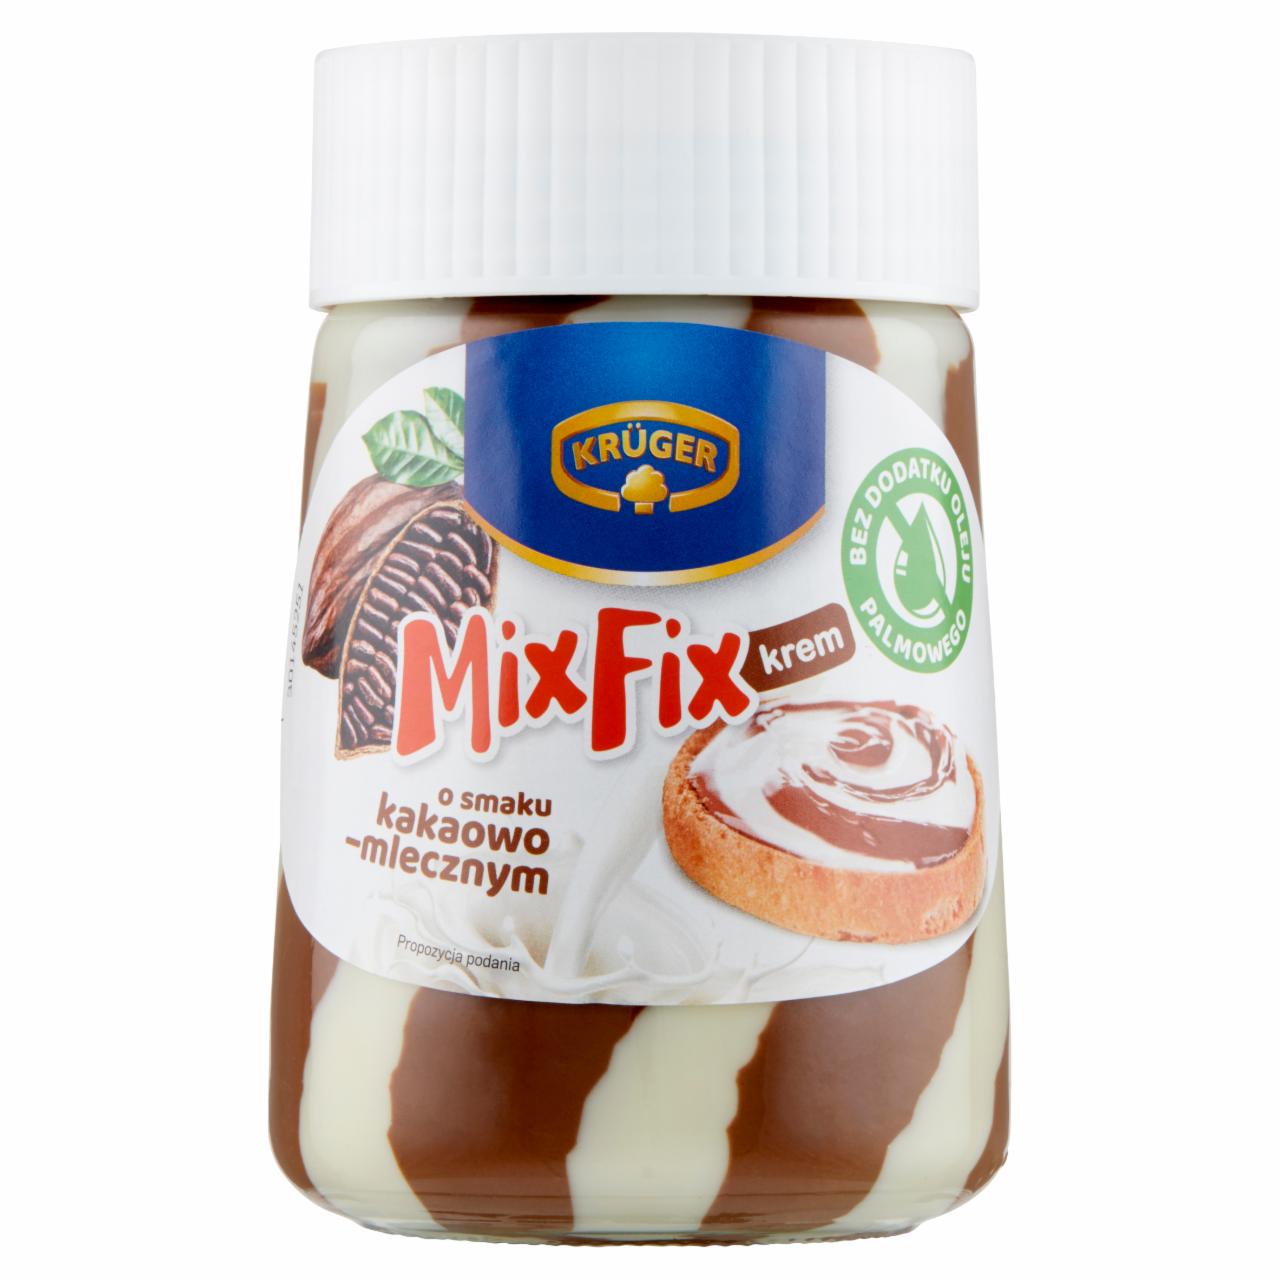 Zdjęcia - Krüger Mix Fix Krem o smaku kakaowo-mlecznym 380 g